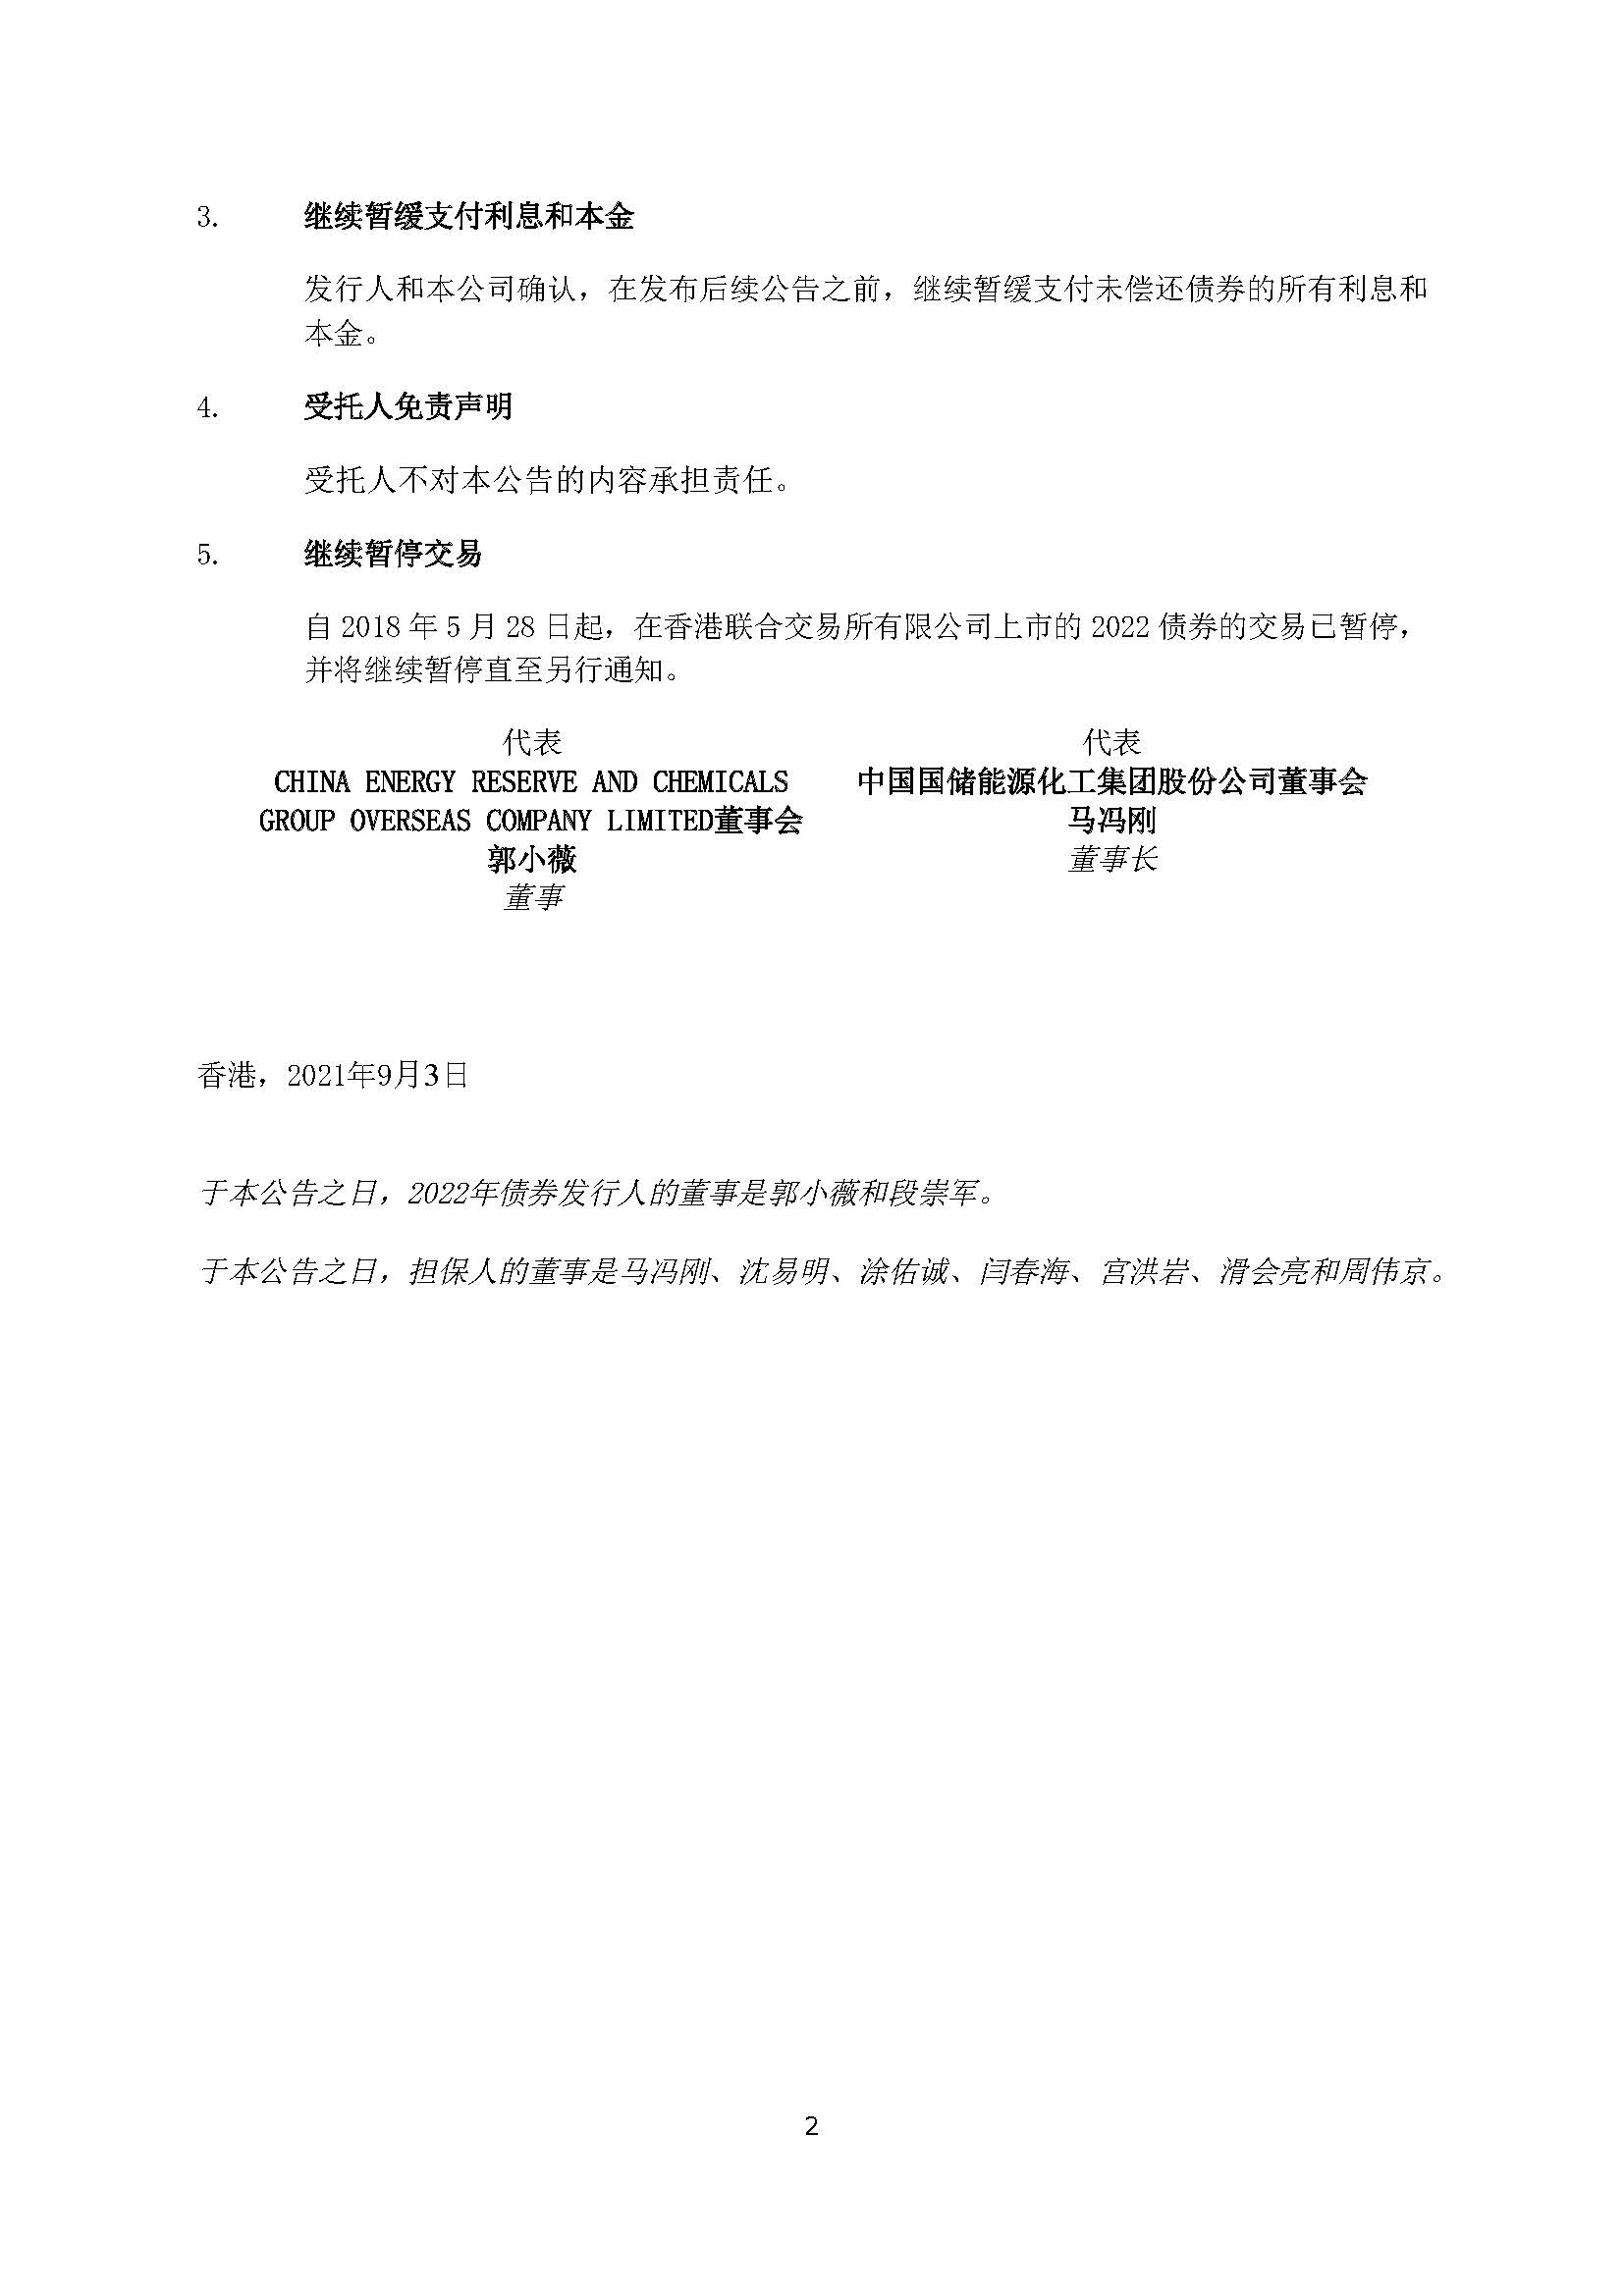 CHN_CERCG - HKEx Announcement (3 September 2021)(244861638.2)_页面_2.jpg